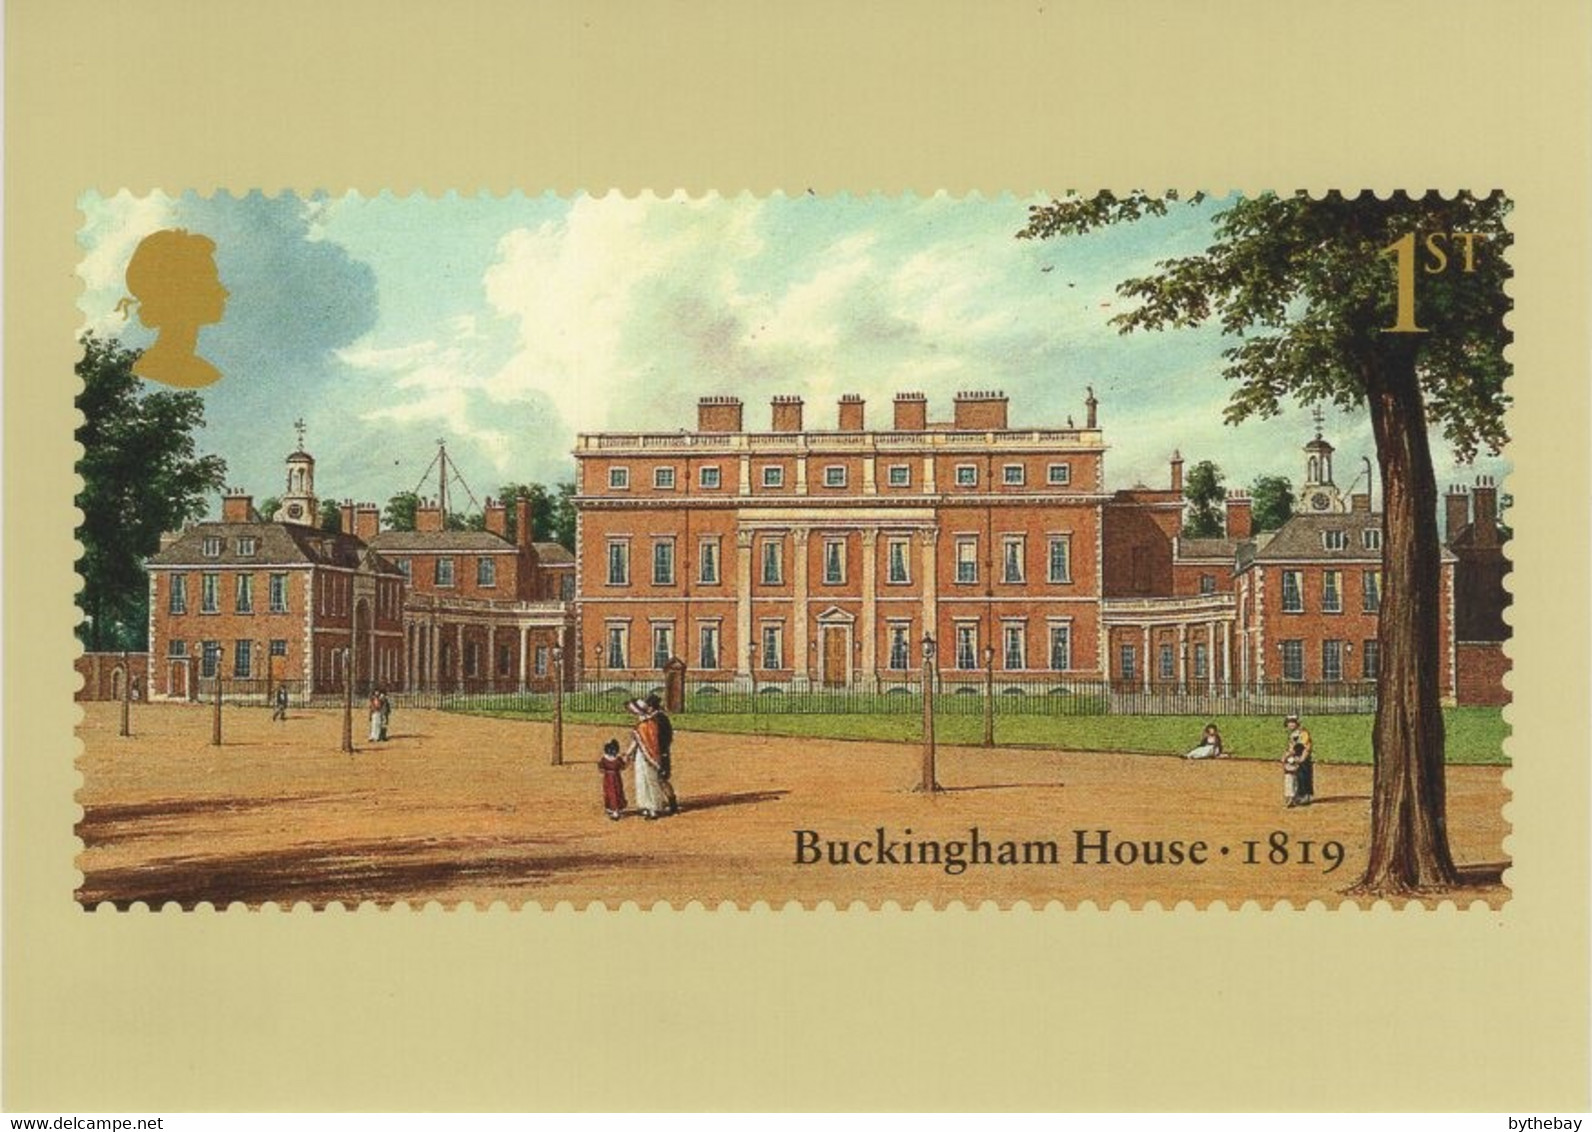 Great Britain 2014 PHQ Card Sc 3282 1st Buckingham House 1819 - Carte PHQ